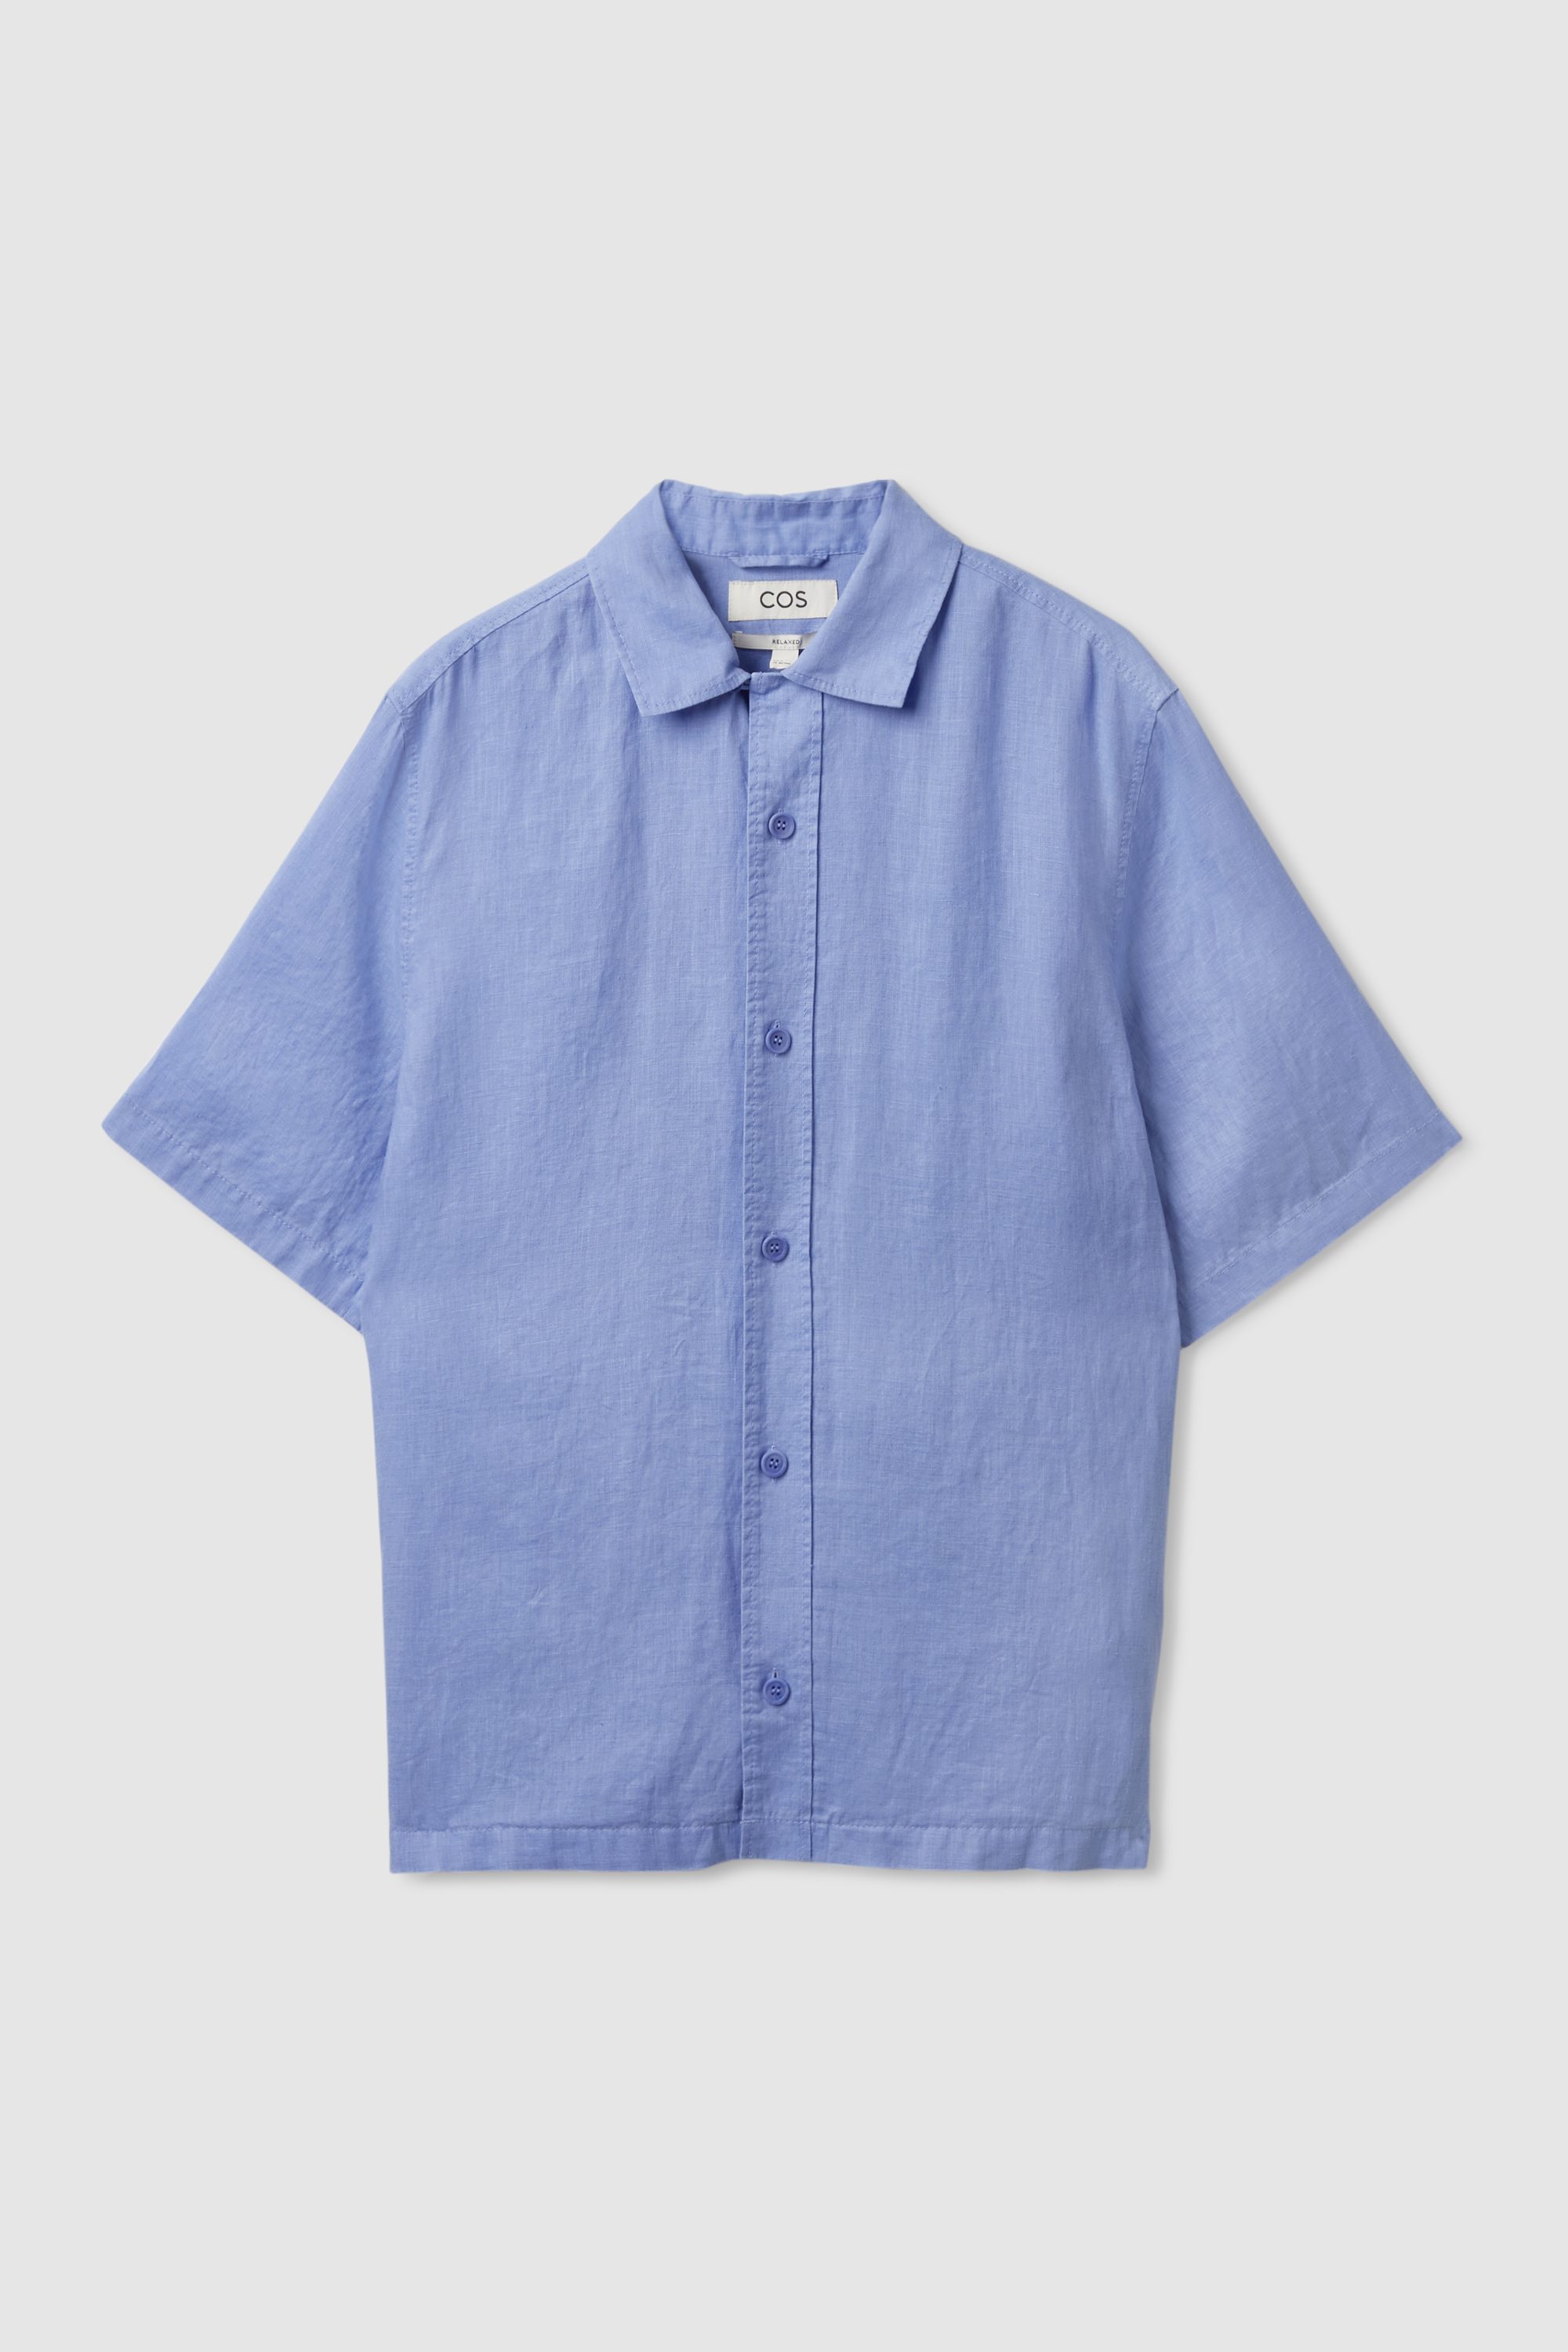 DAMEN Hemden & T-Shirts Hemd Wickel Rabatt 70 % Oysho Hemd Blau/Weiß M 